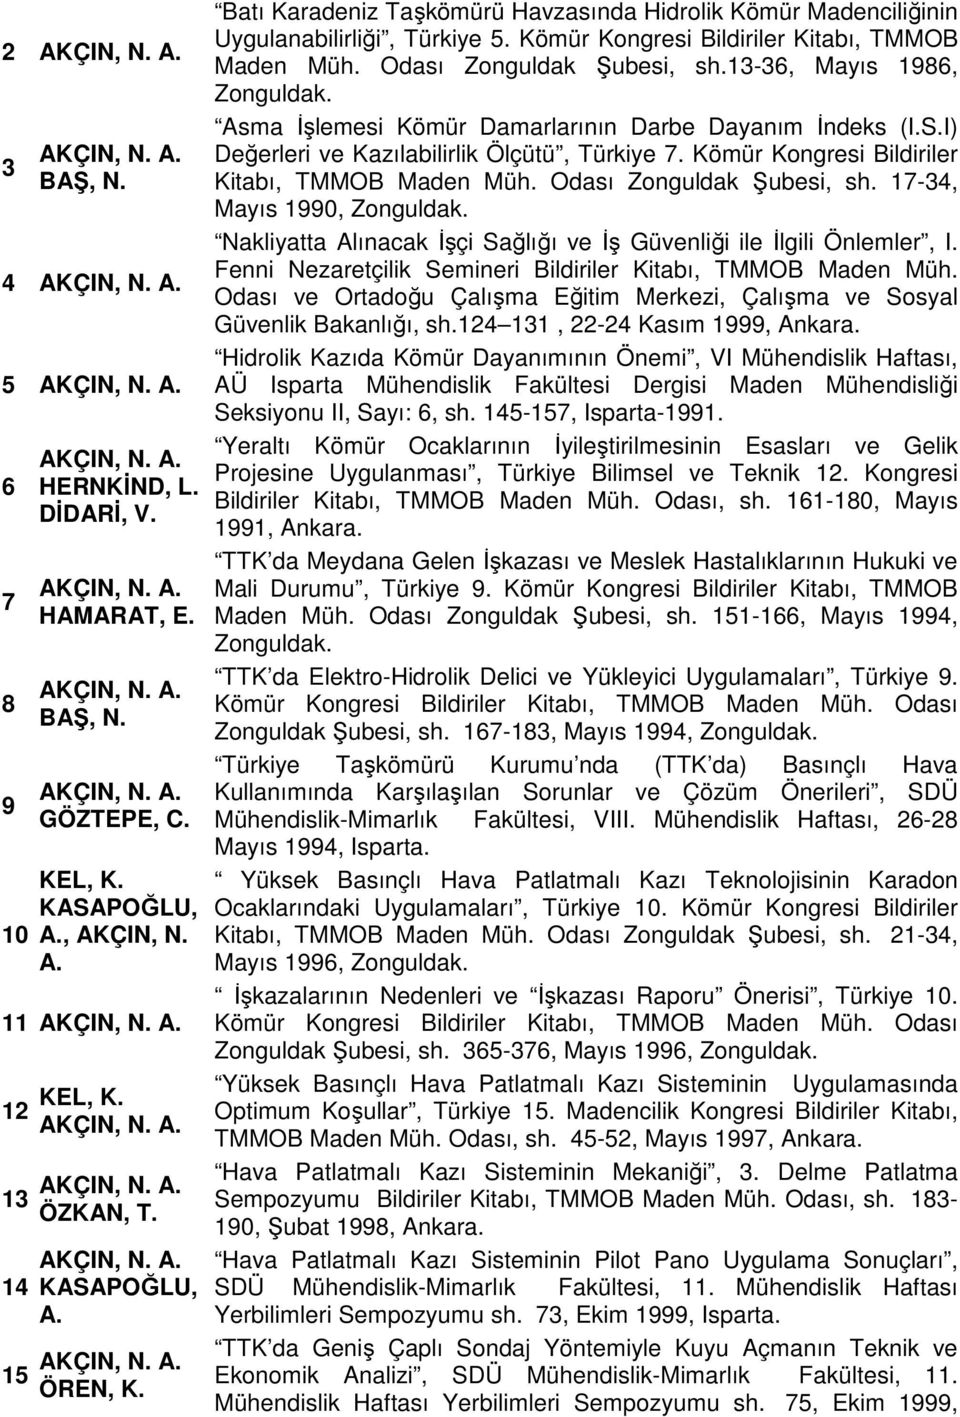 13-36, Mayıs 1986, Zonguldak. Asma İşlemesi Kömür Damarlarının Darbe Dayanım İndeks (I.S.I) Değerleri ve Kazılabilirlik Ölçütü, Türkiye 7. Kömür Kongresi Bildiriler Kitabı, TMMOB Maden Müh.